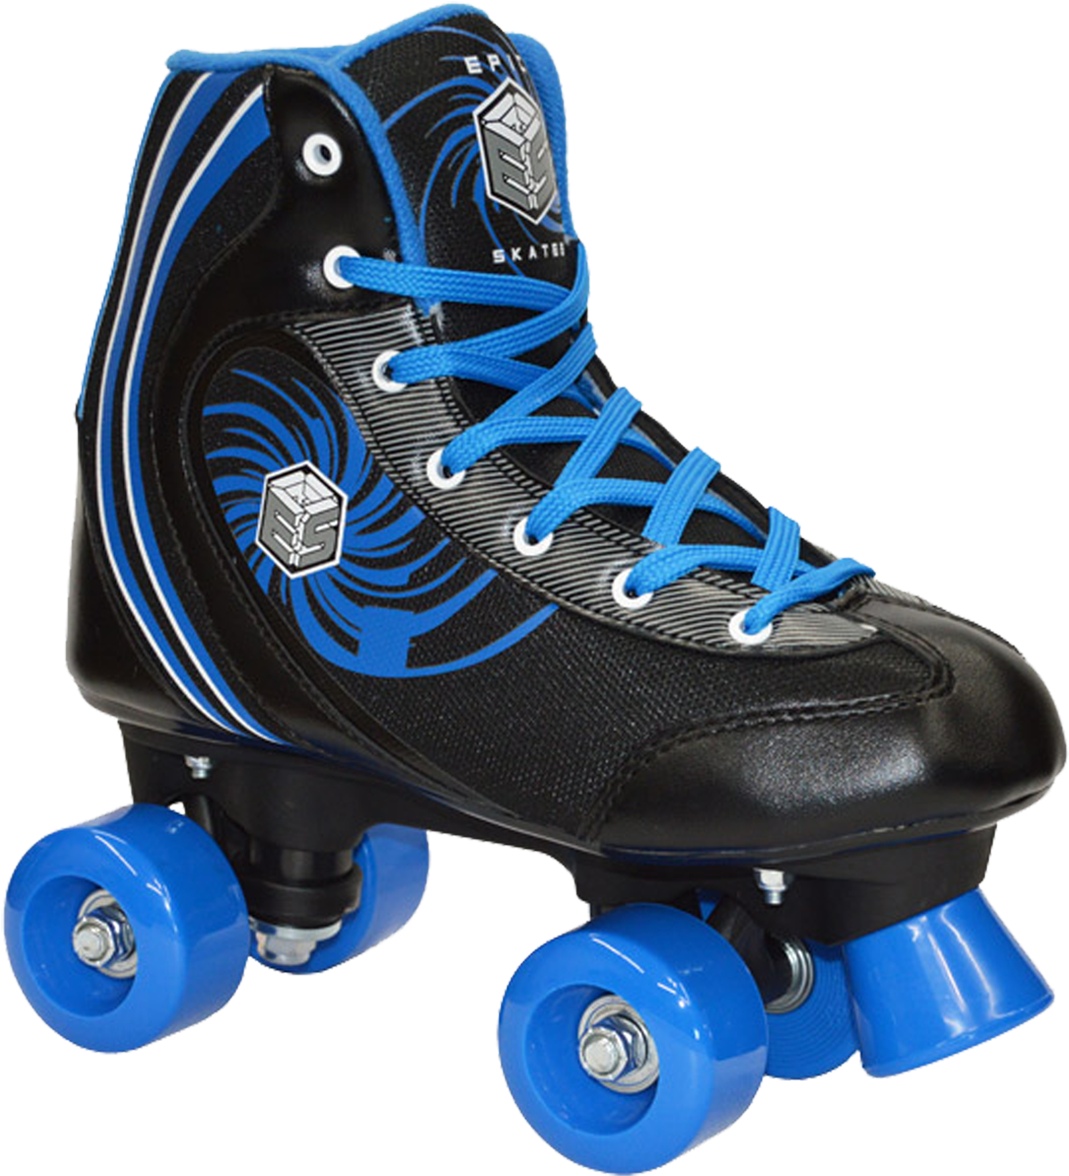 Roller Skates Png - Epic Rock Candy Quad Speed Roller Skates, Black (1600x1200), Png Download